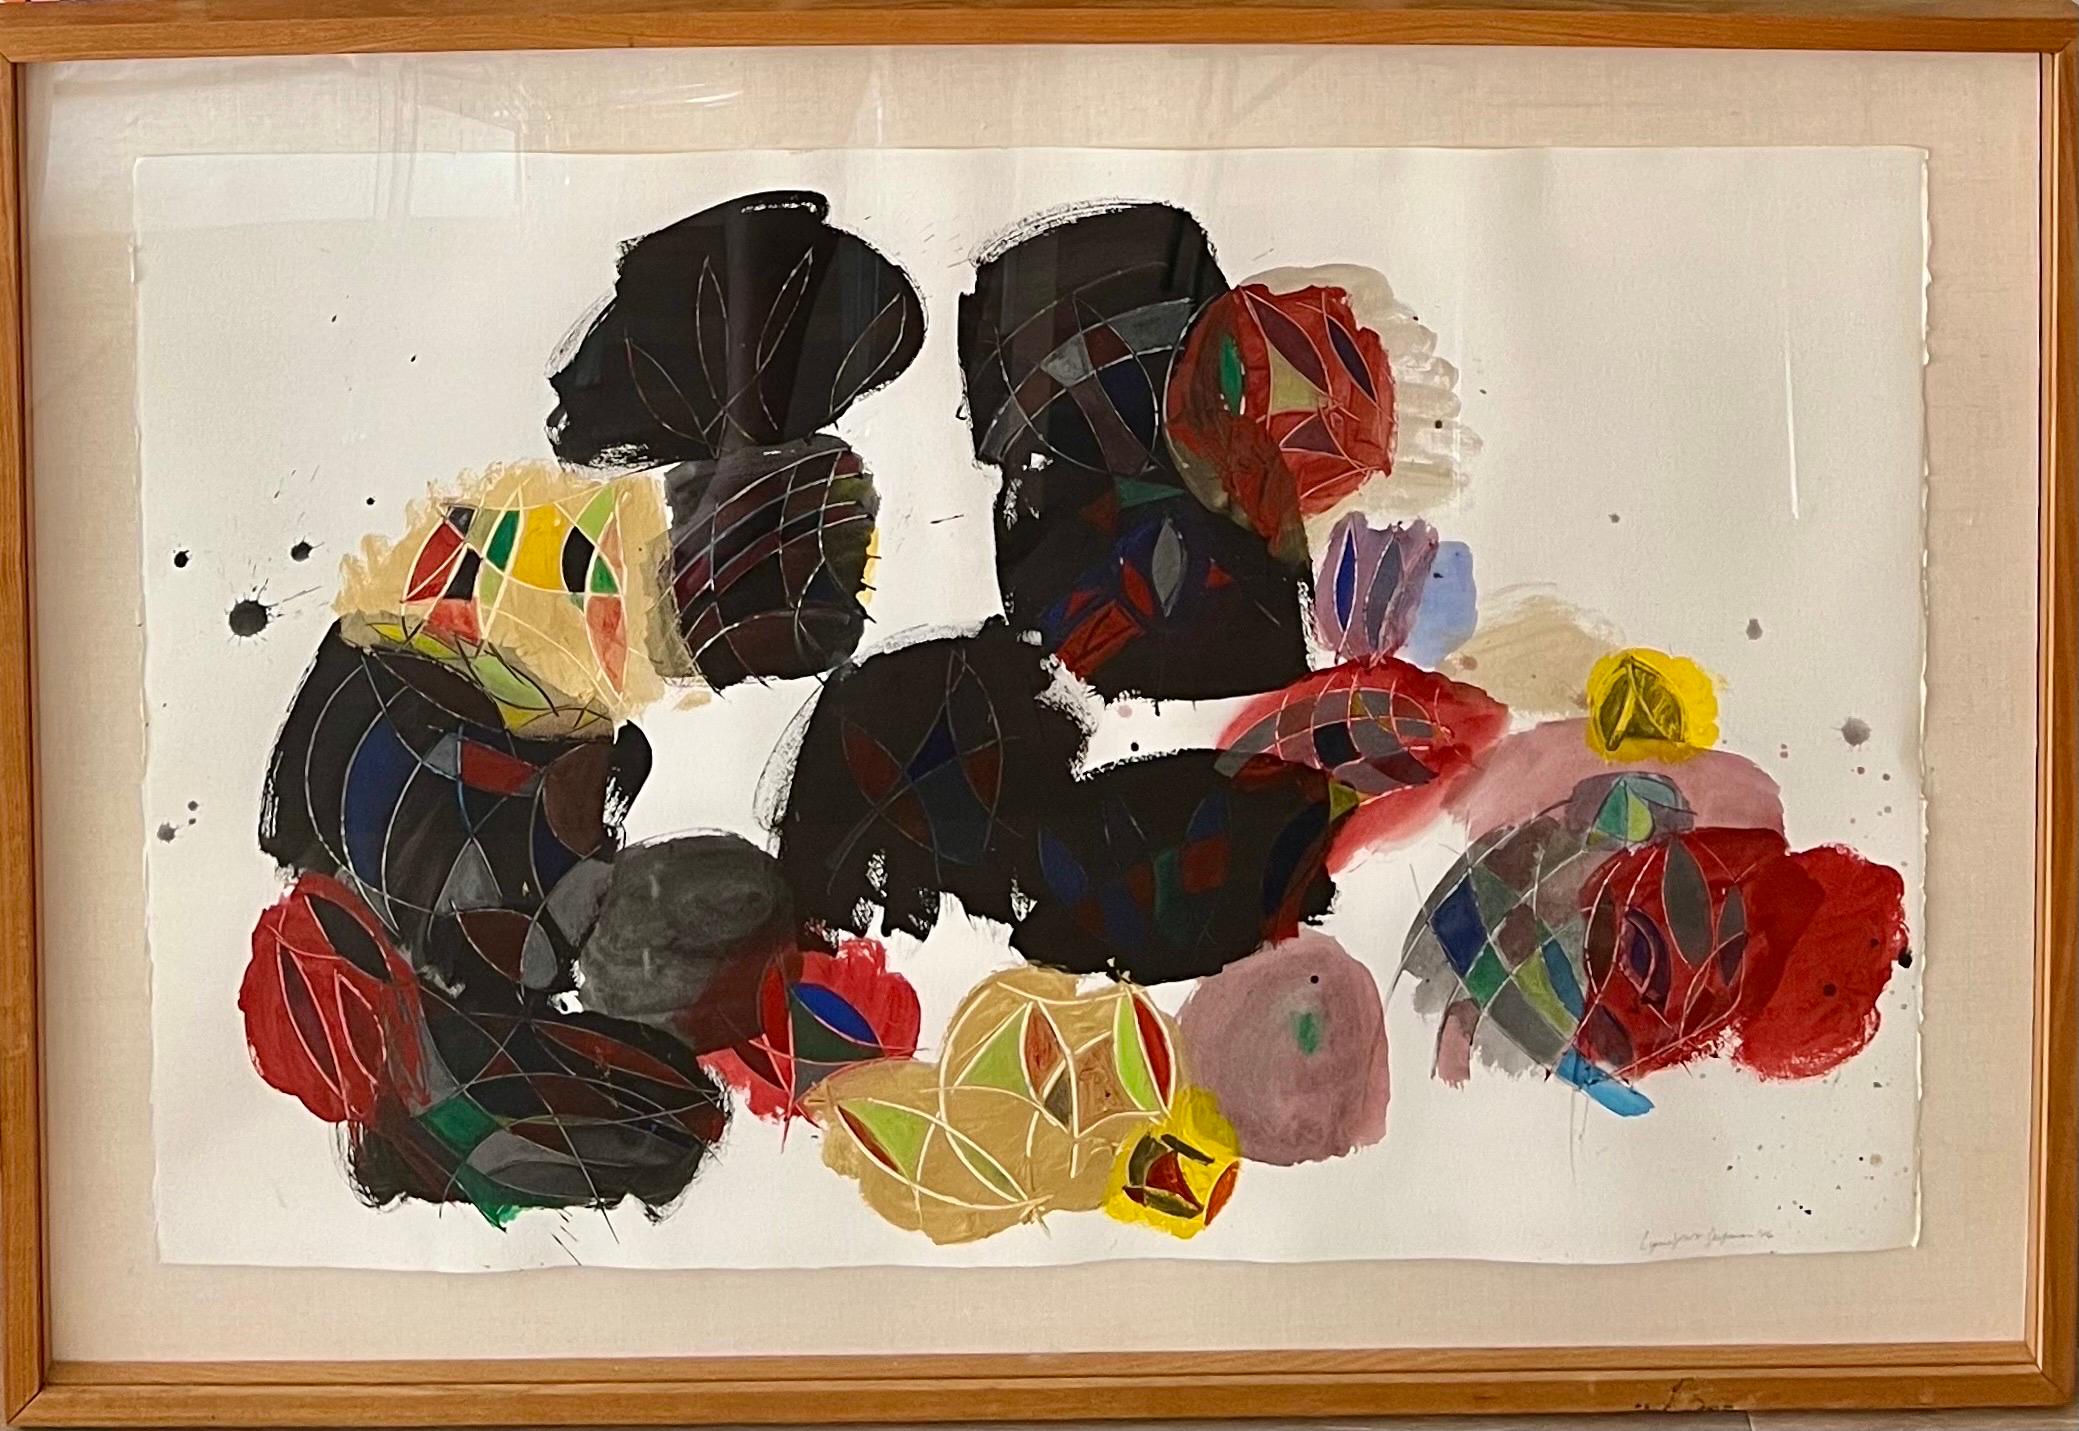 Lynne Golob Gelfman, Amerikanerin (1944-2020)
Abstrakte Komposition in Farben
Acrylfarbe und Aquarell auf Papier
Rekto handsigniert und datiert
Blatt: 40 X 26 Zoll
Abmessungen des Rahmens: 47,5 X 32,5 Rahmen mit Verglasung


Gelfman wird oft dafür